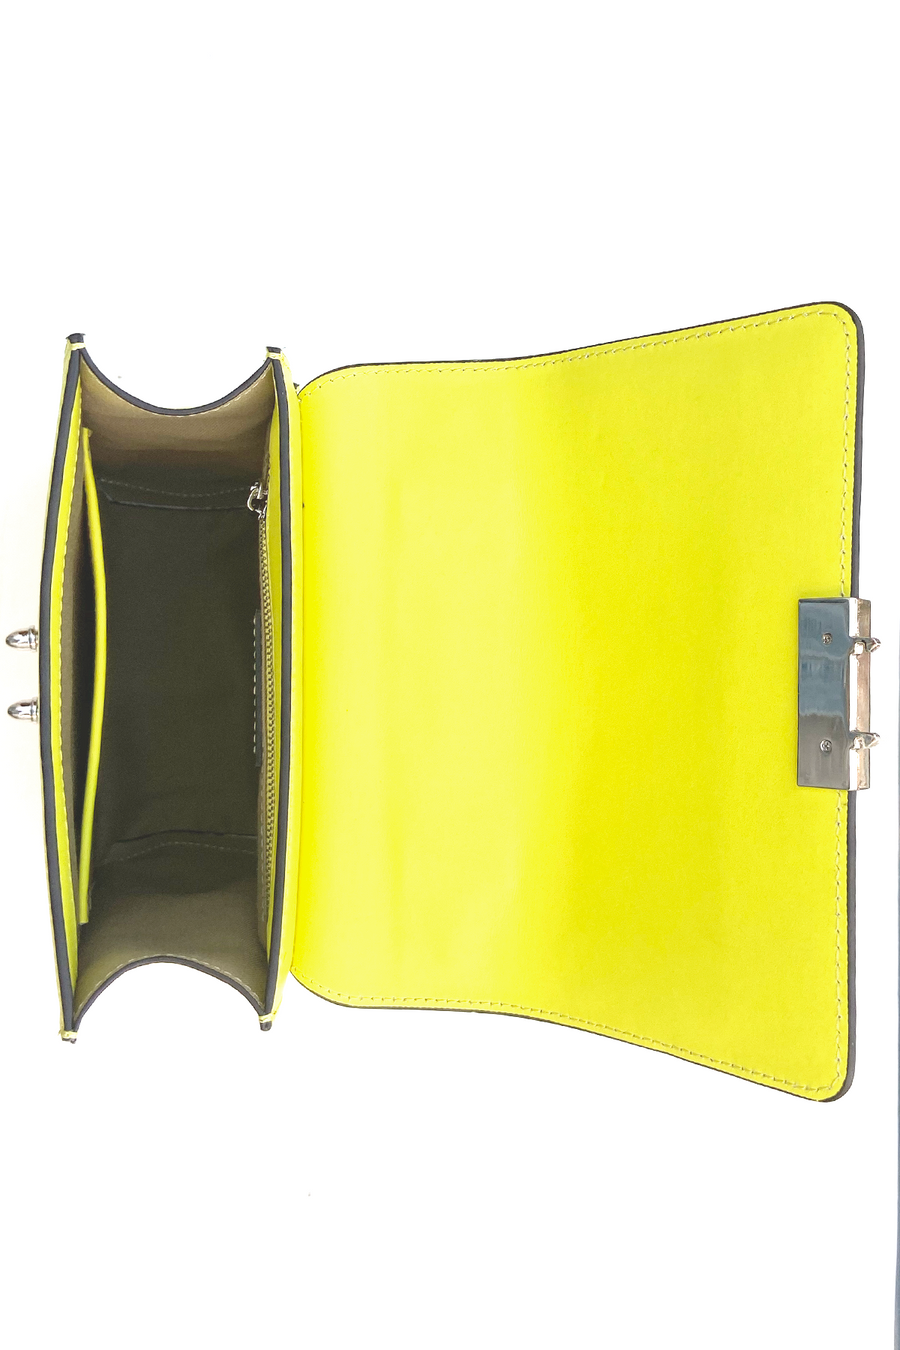 Yellow leather backpack | SUSU Handbags